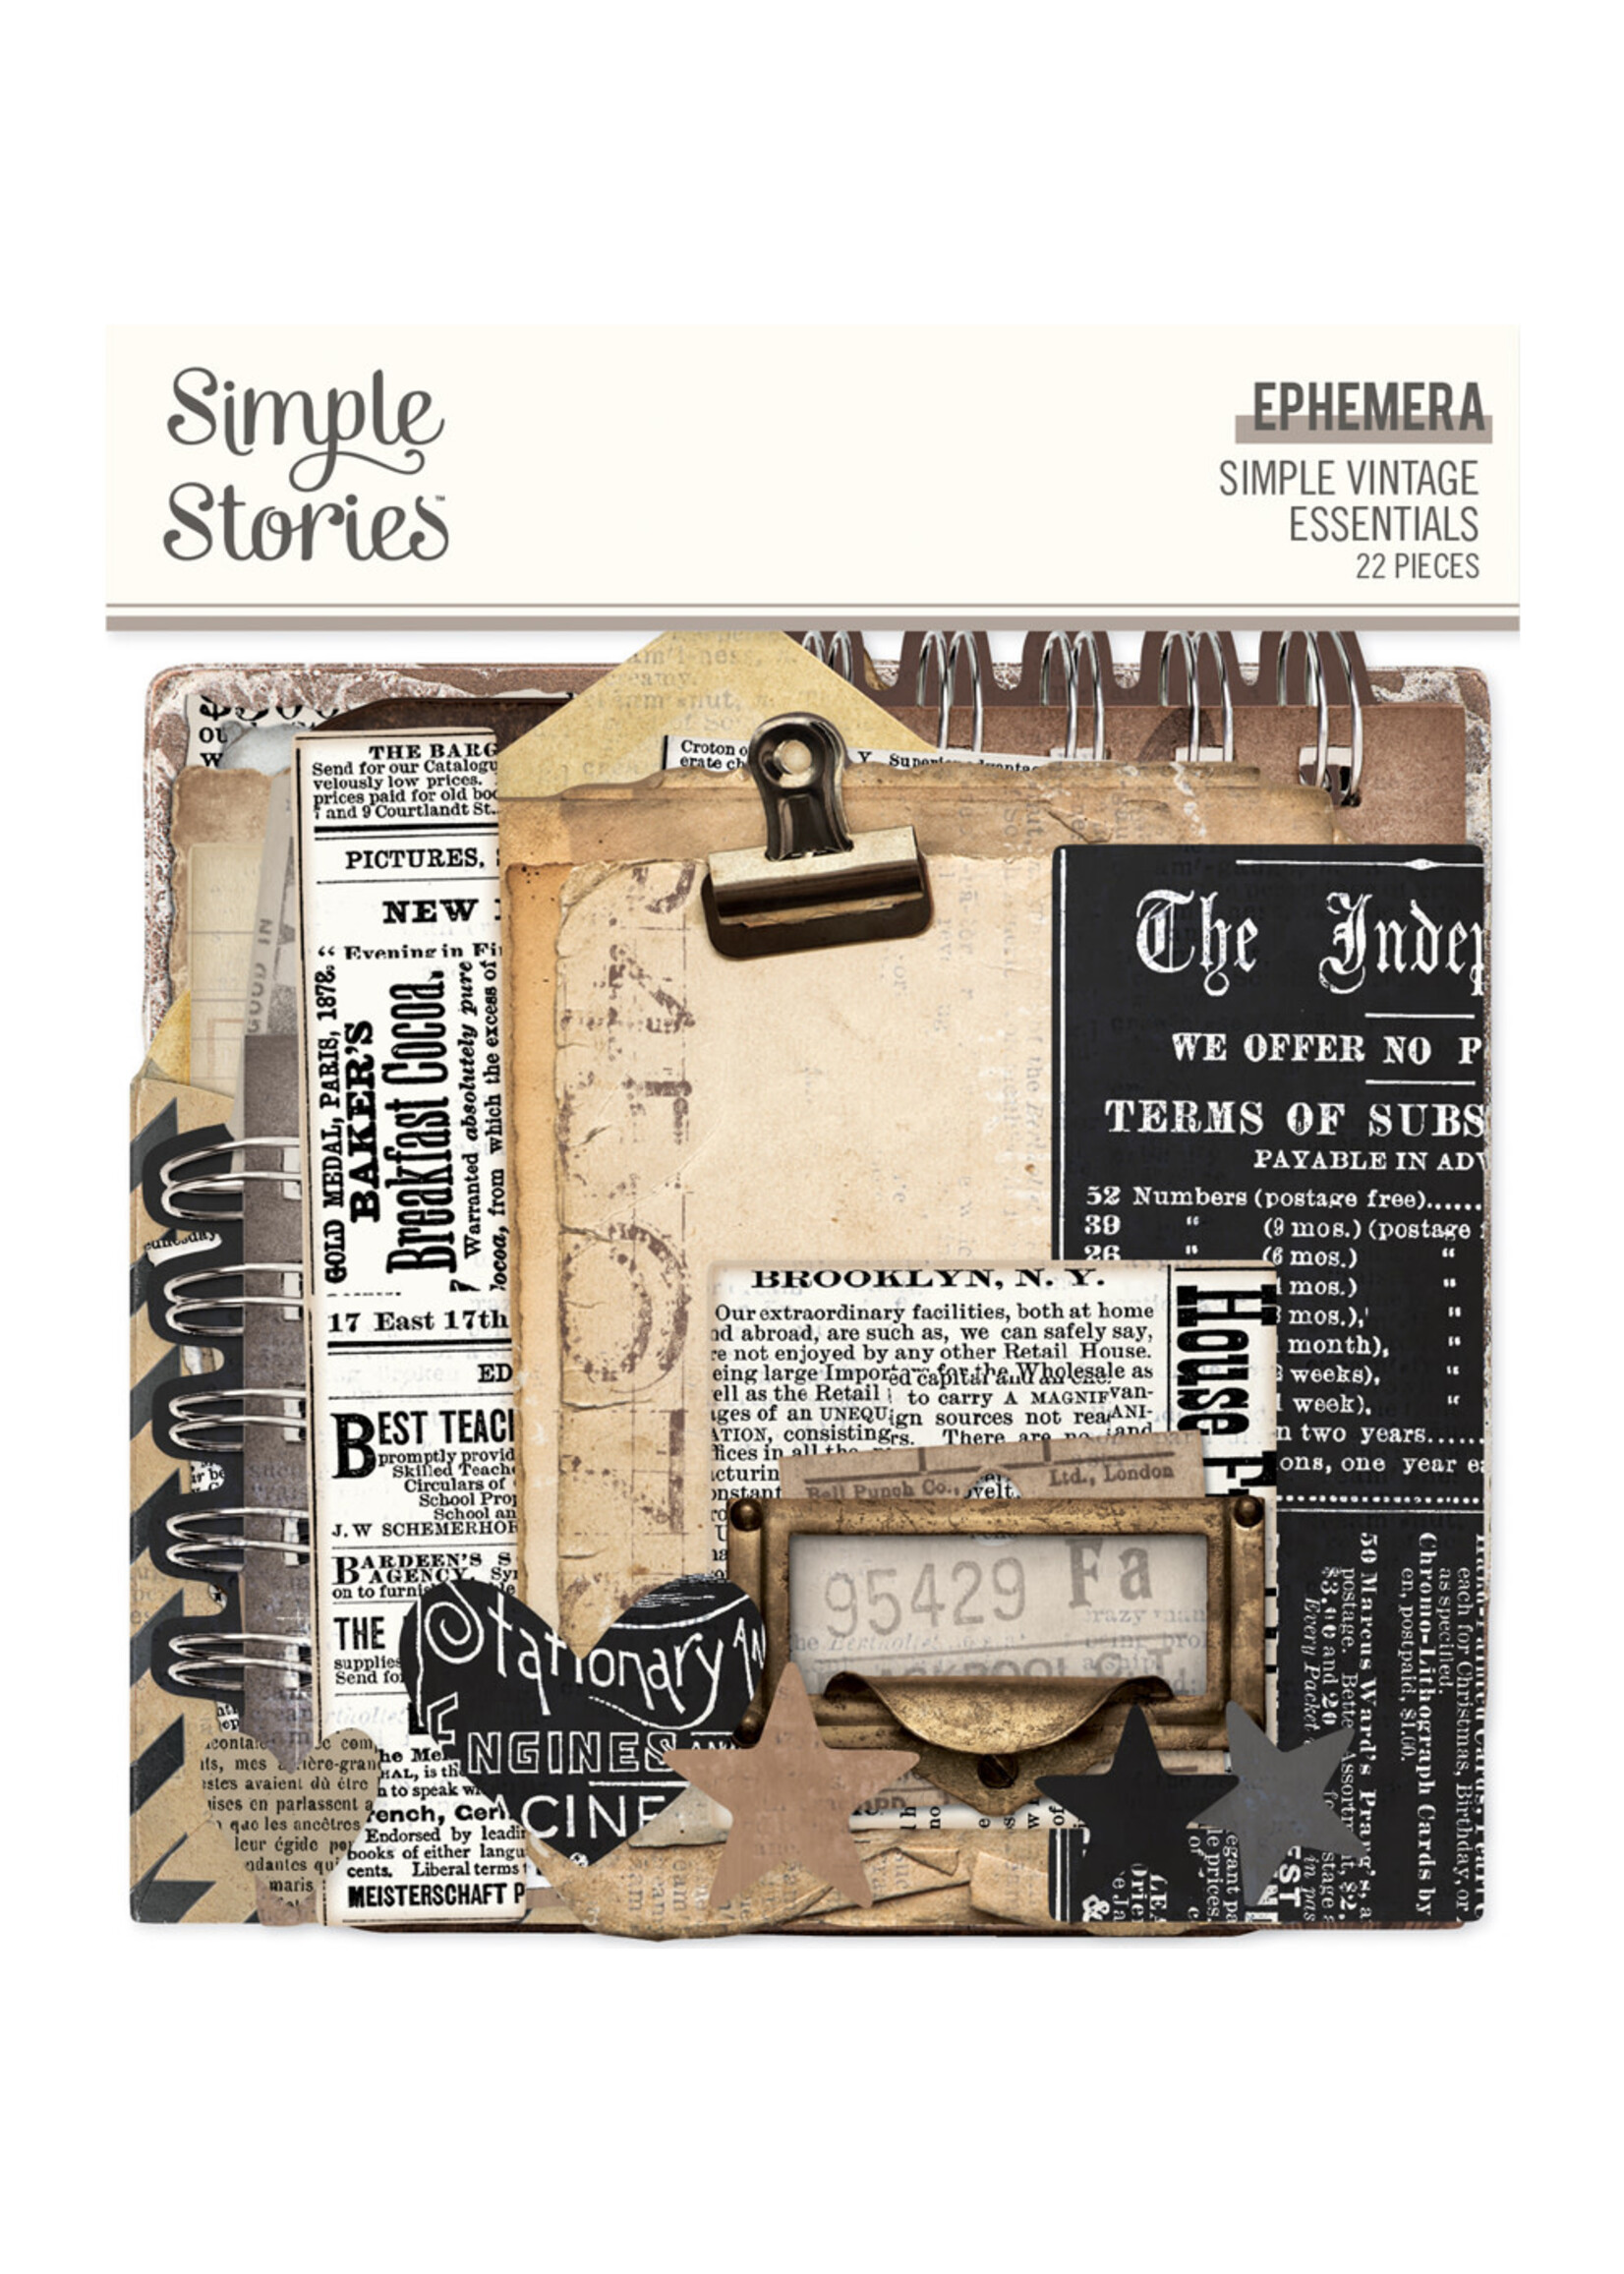 Simple Stories Simple Vintage Essentials  -  Ephemera